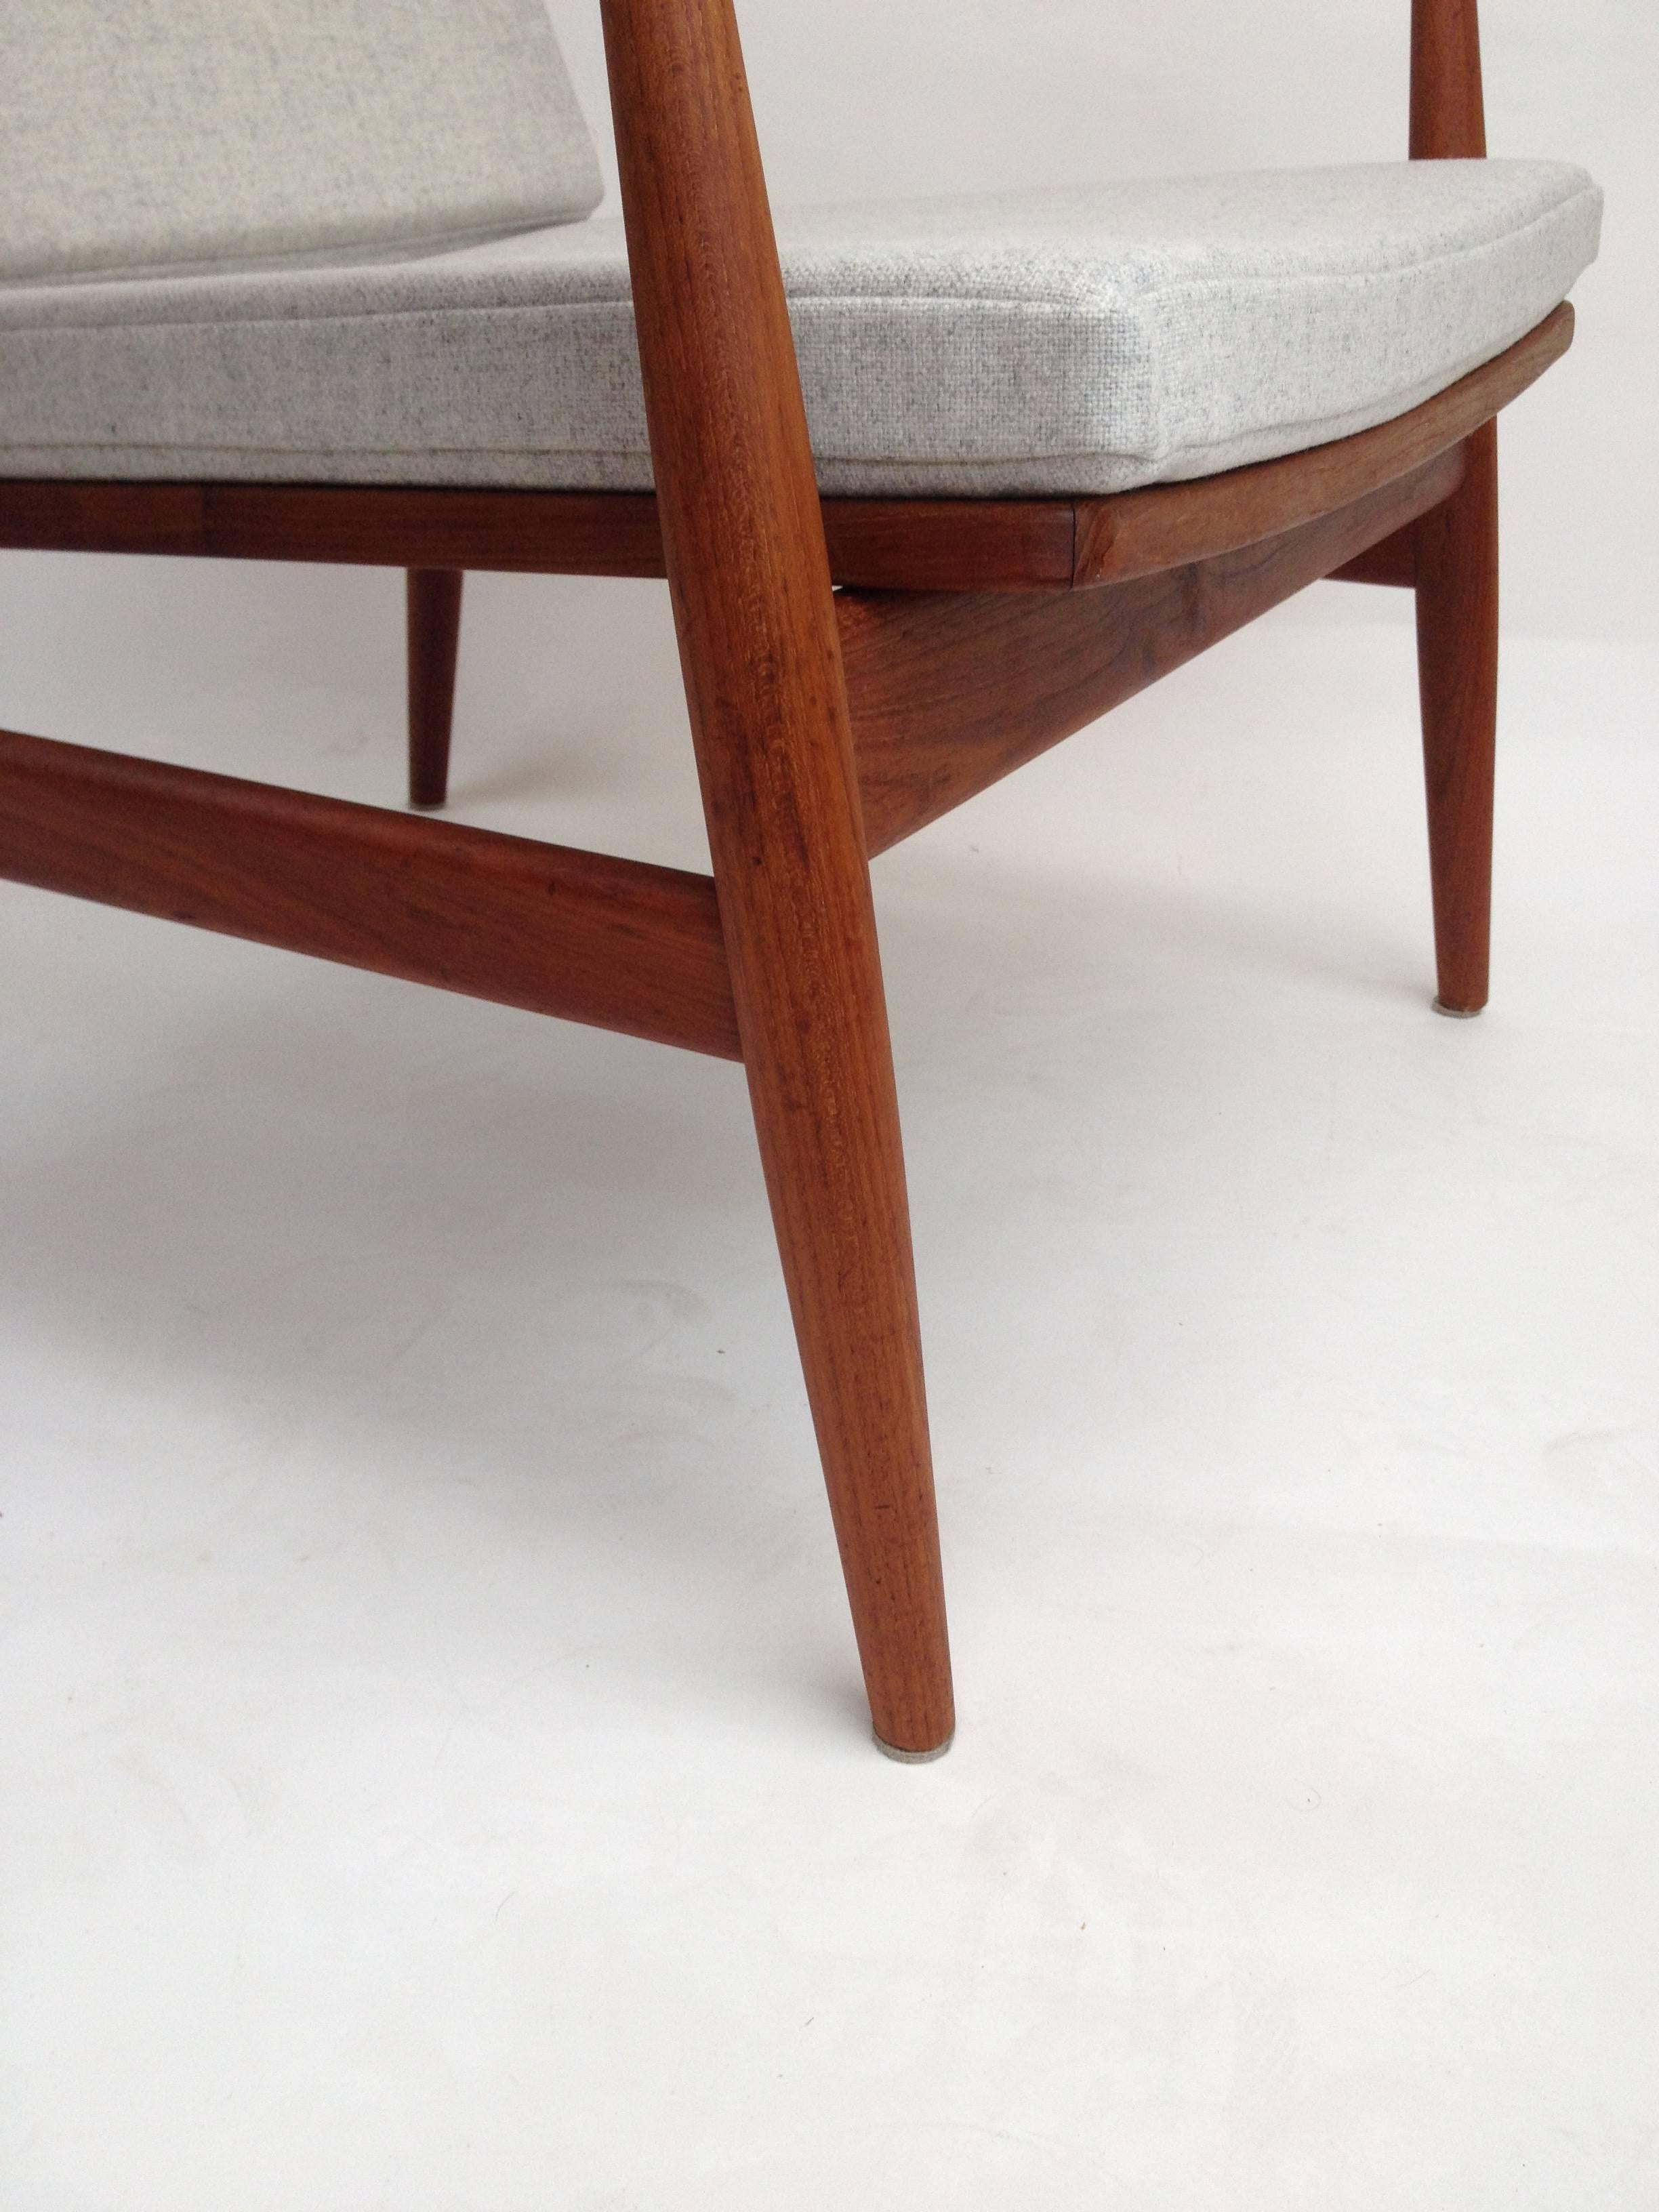 1950s Danish Teak Easy Chair Designed by Finn Juhl for France & Daverkosen For Sale 1